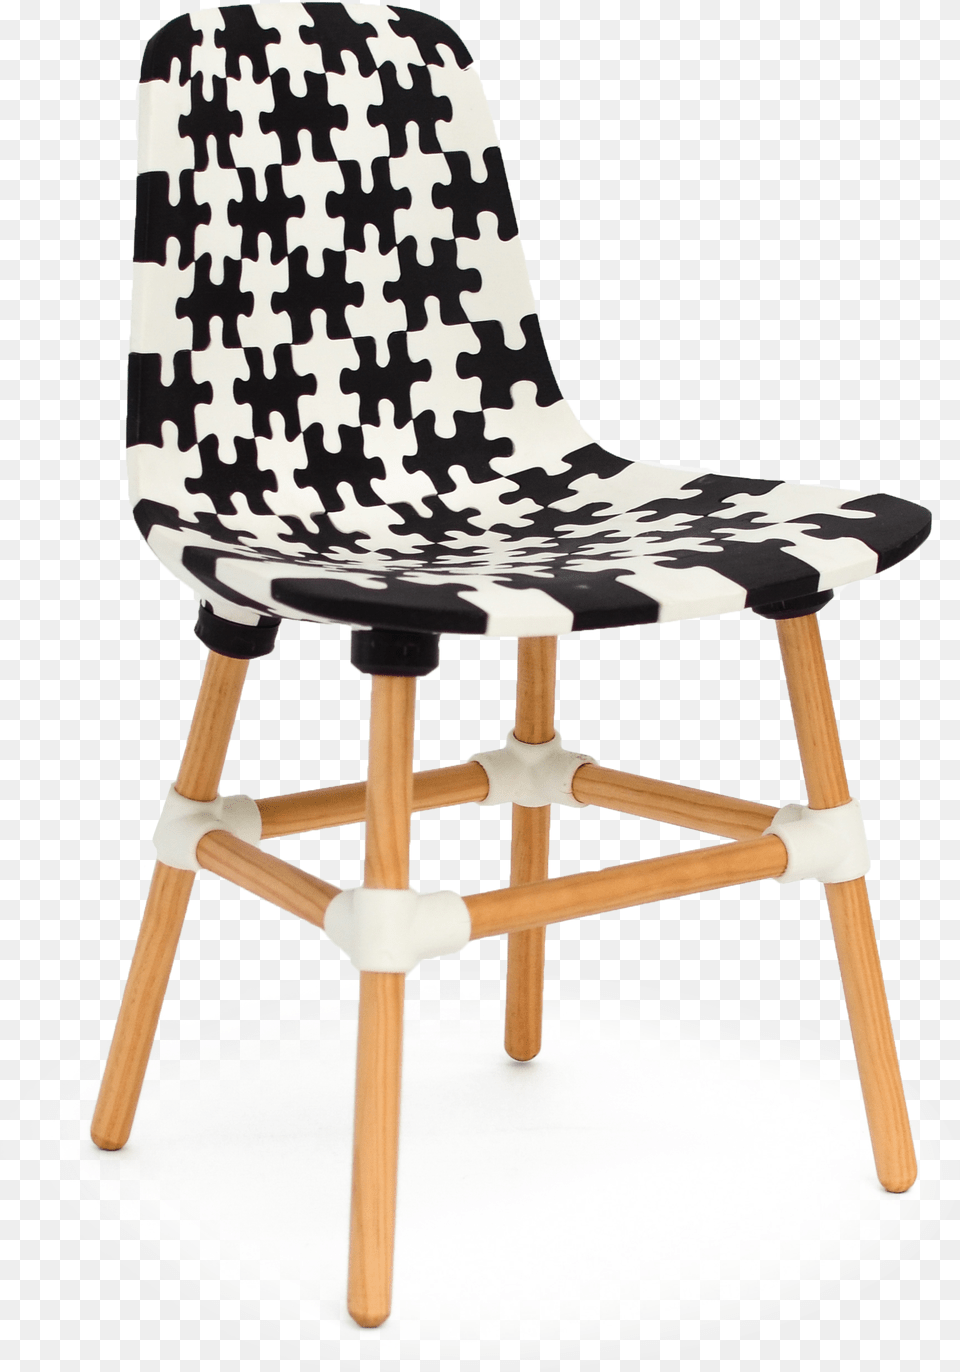 Makerchair Trans Latest Joris Laarman Puzzle Chair, Furniture Free Transparent Png